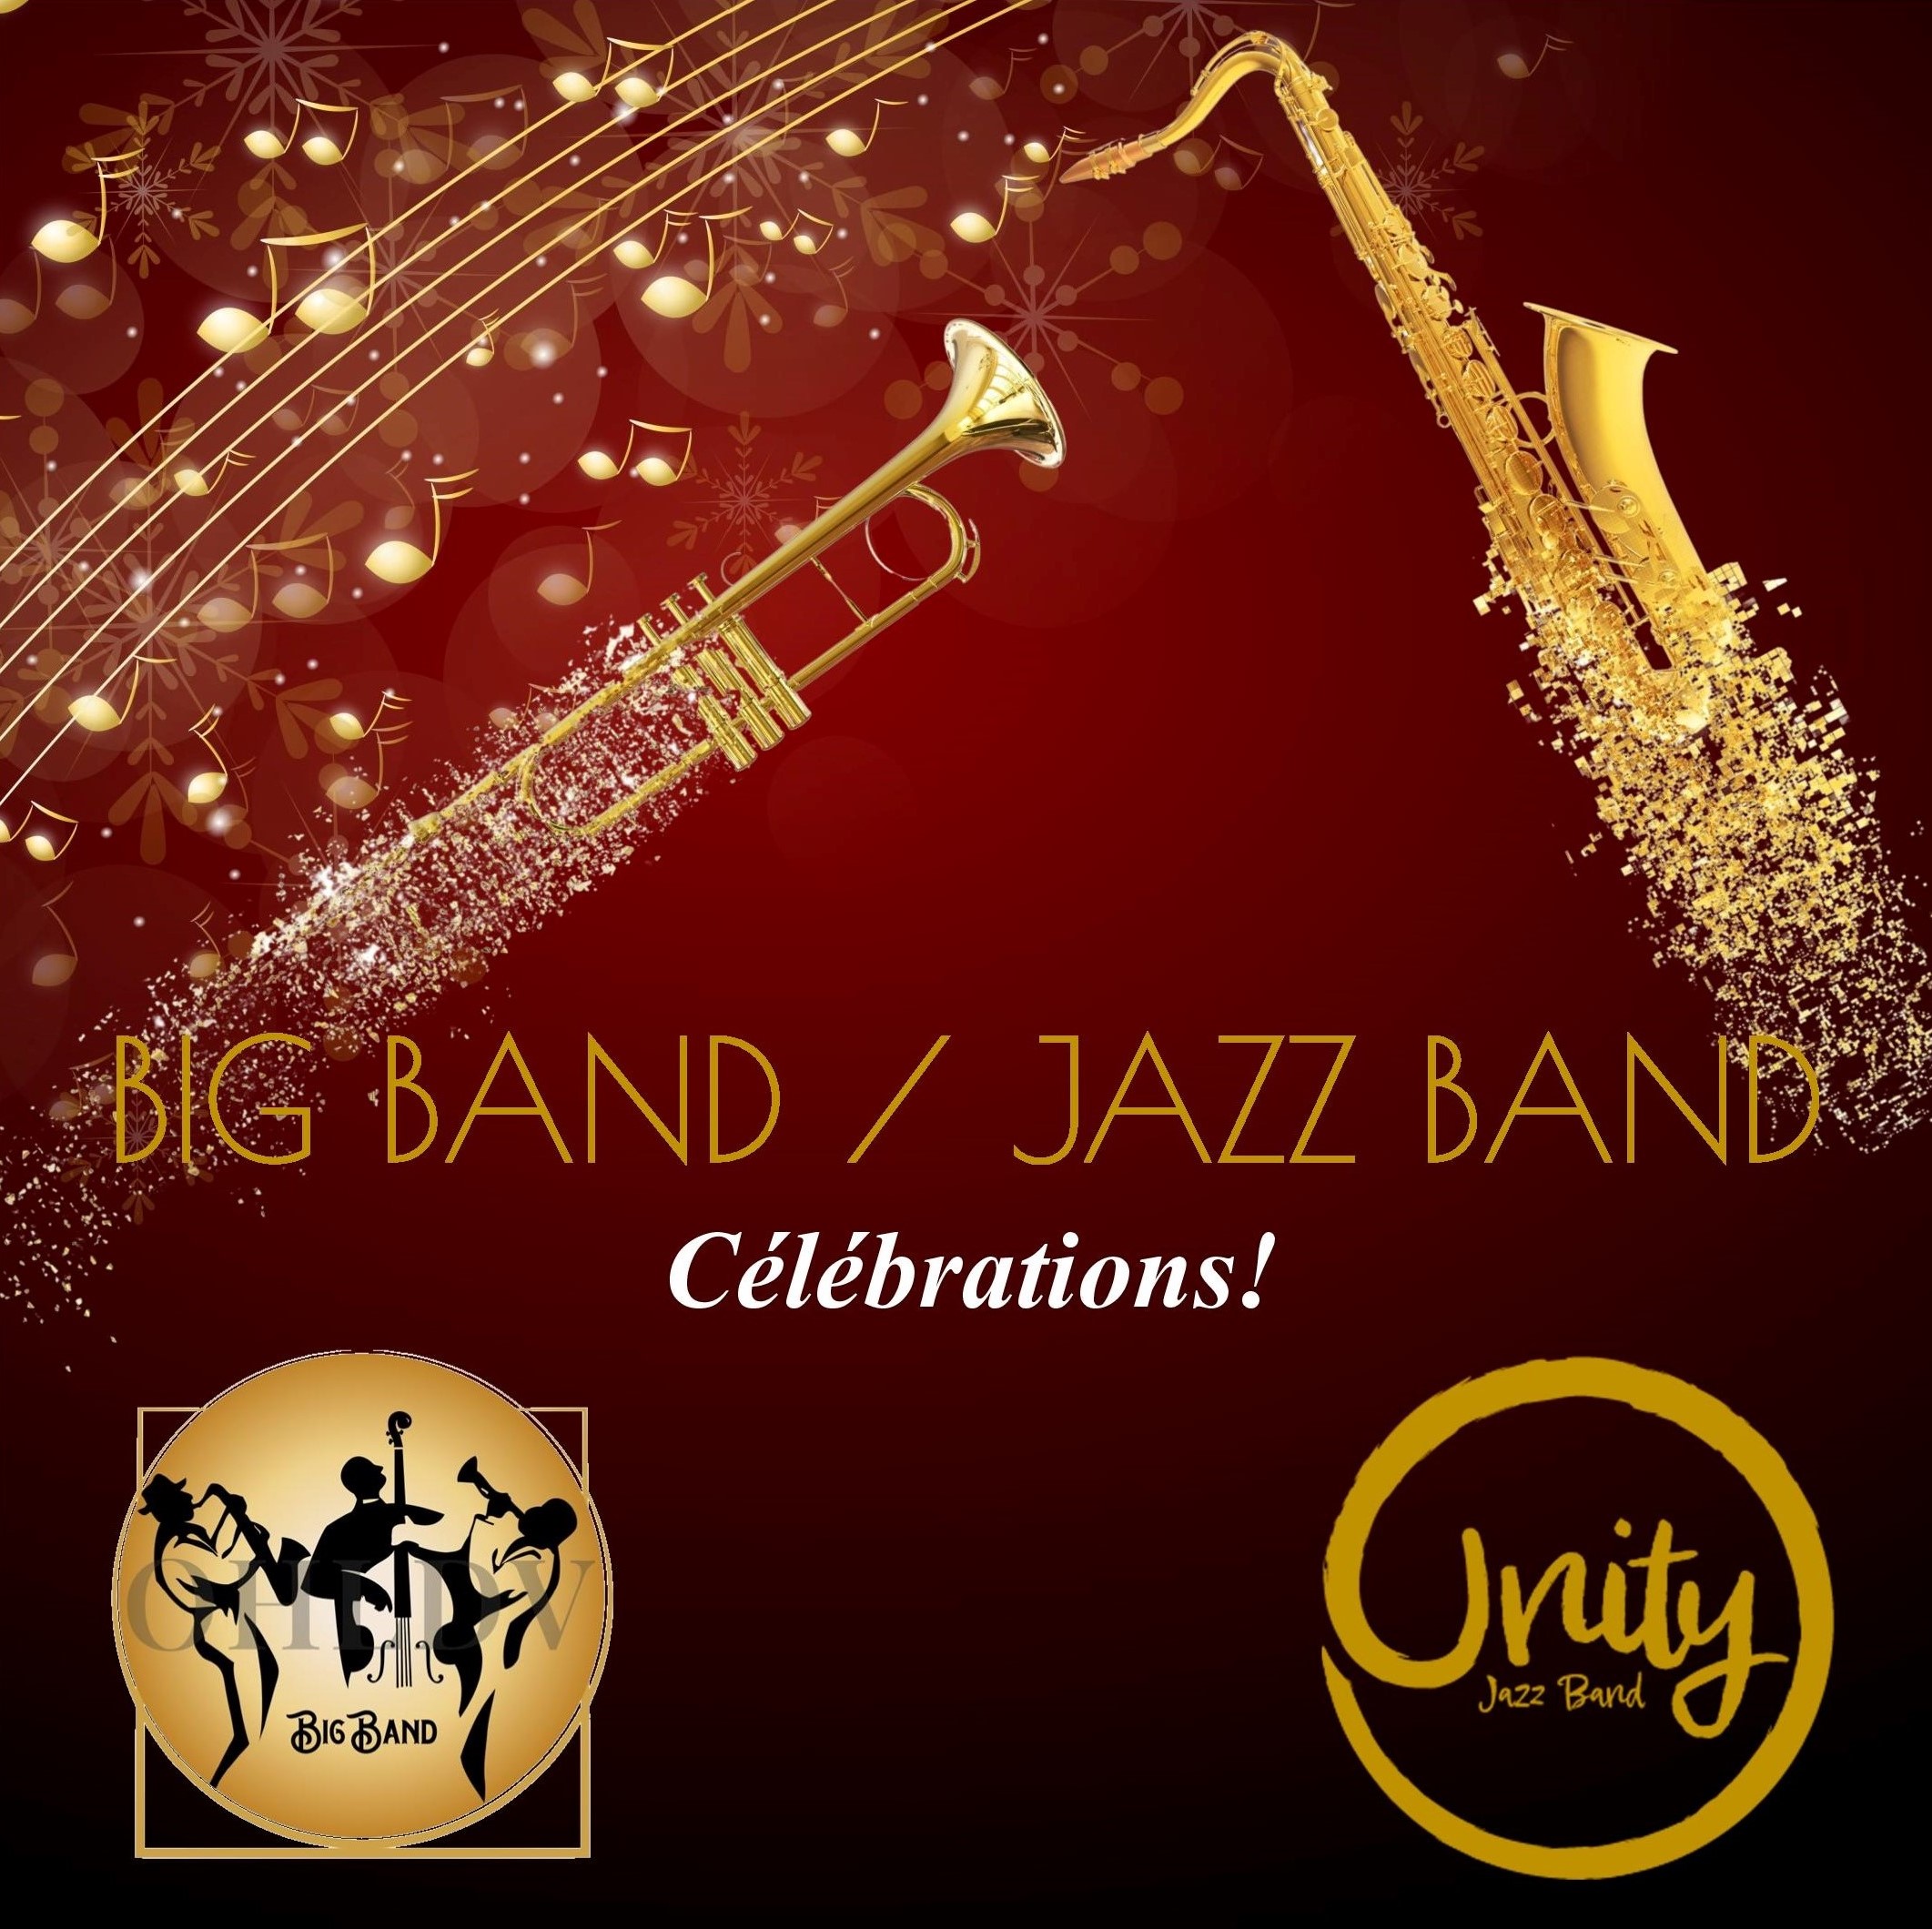 Celebrations big band - jazz band